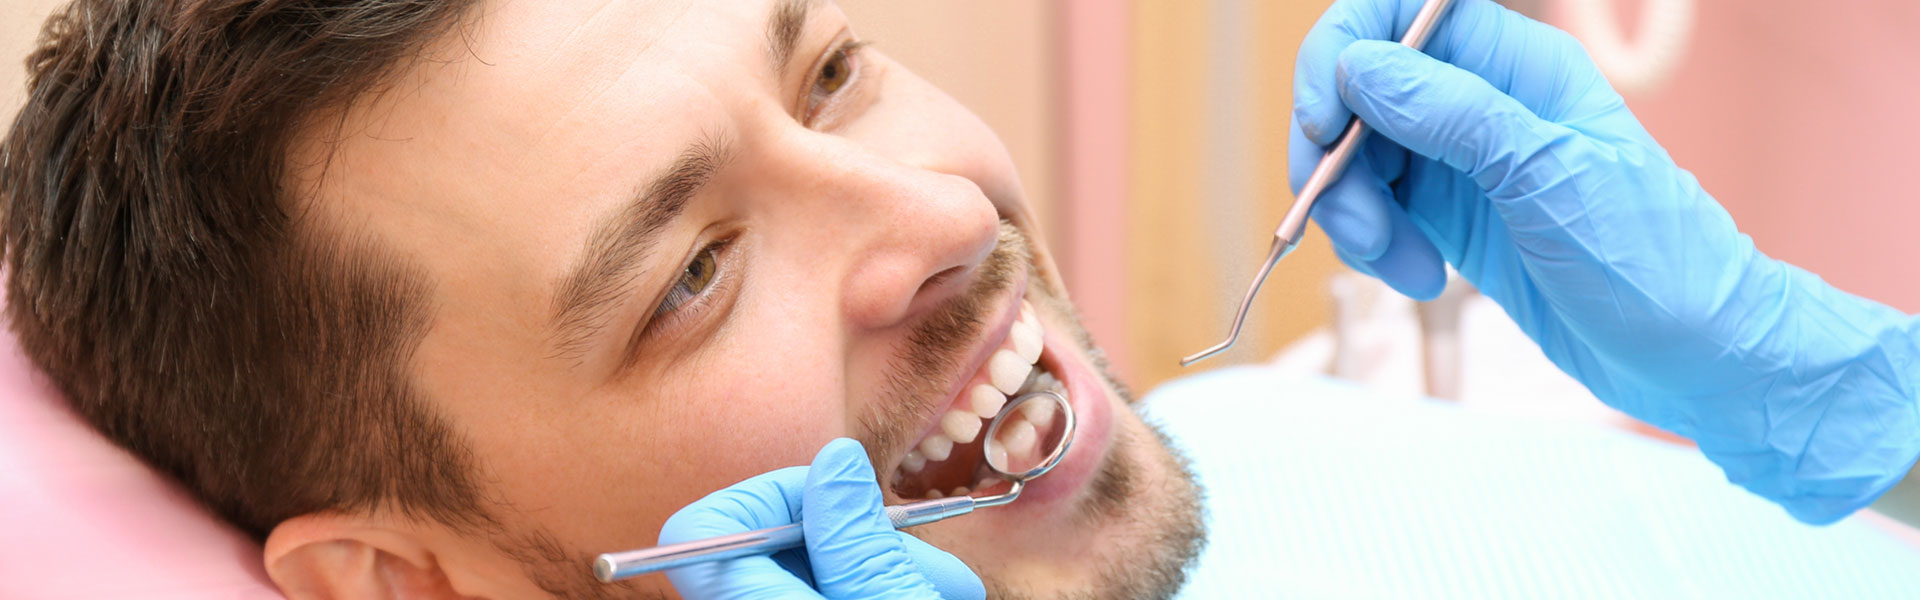 A man smiling at the dental